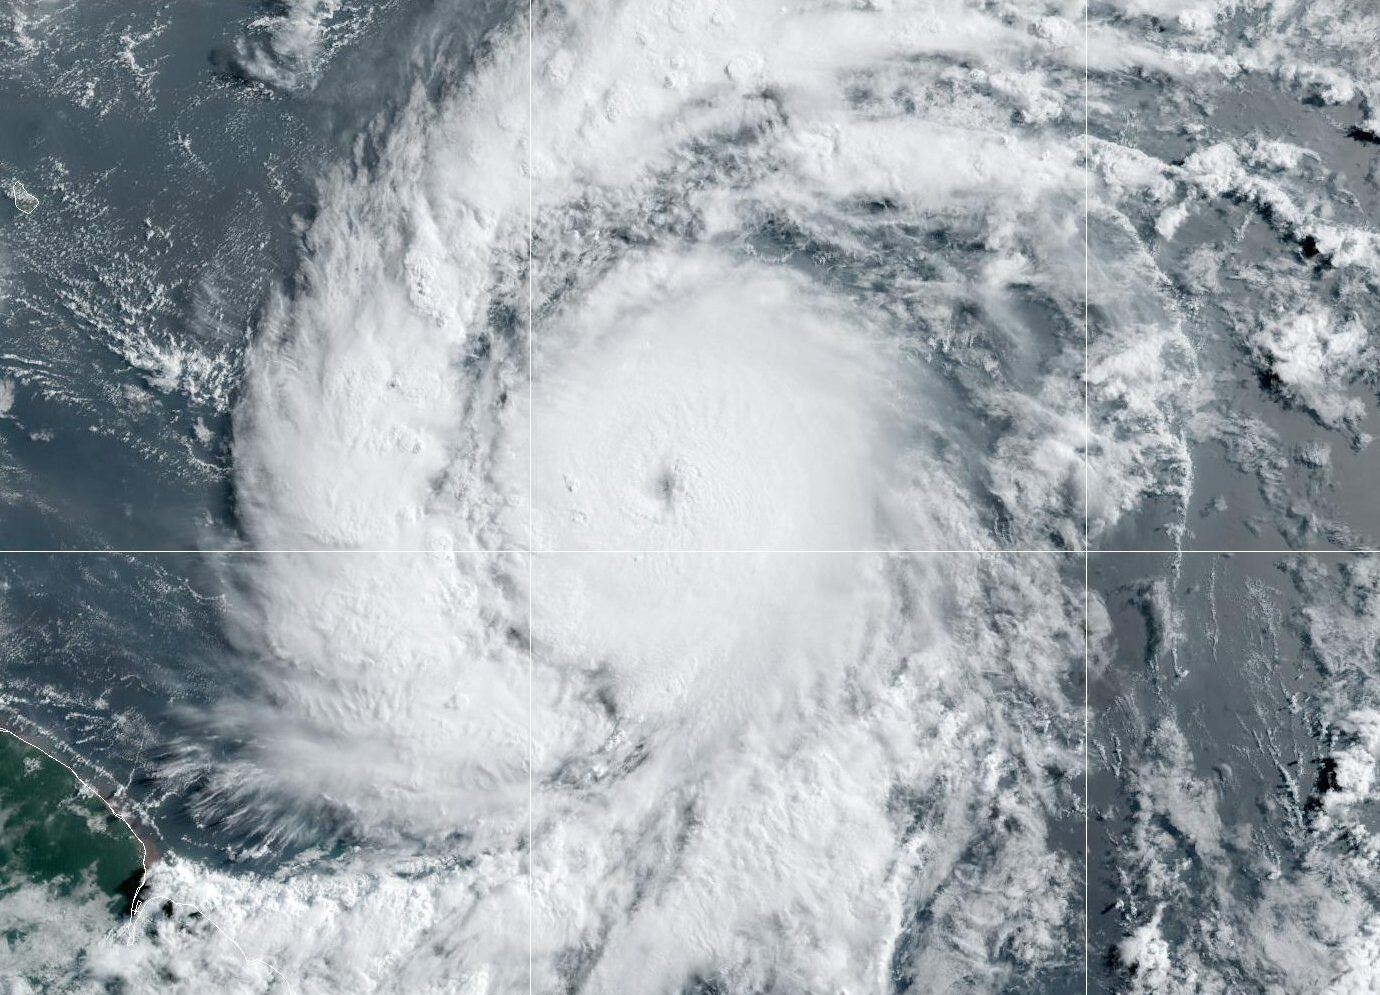 Tormenta Beryl es huracán categoría 3 y avanza al Caribe -Agencia Carabobeña de Noticias - Agencia ACN- Noticias Carabobo